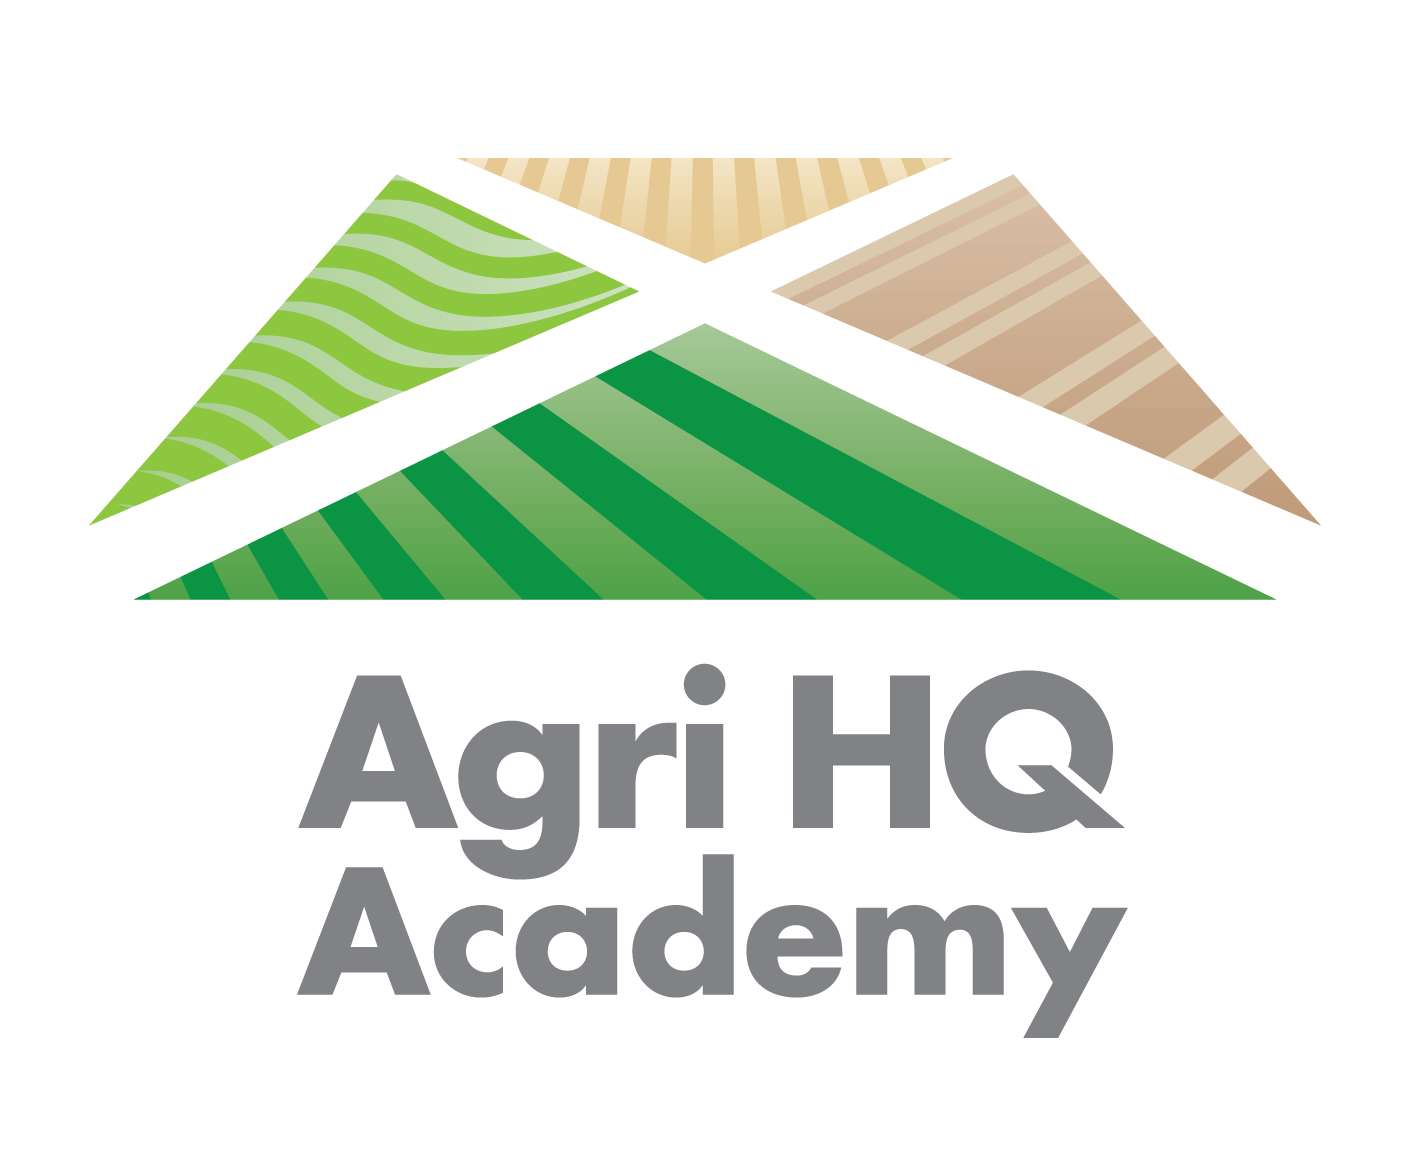 Agri HQ Academy